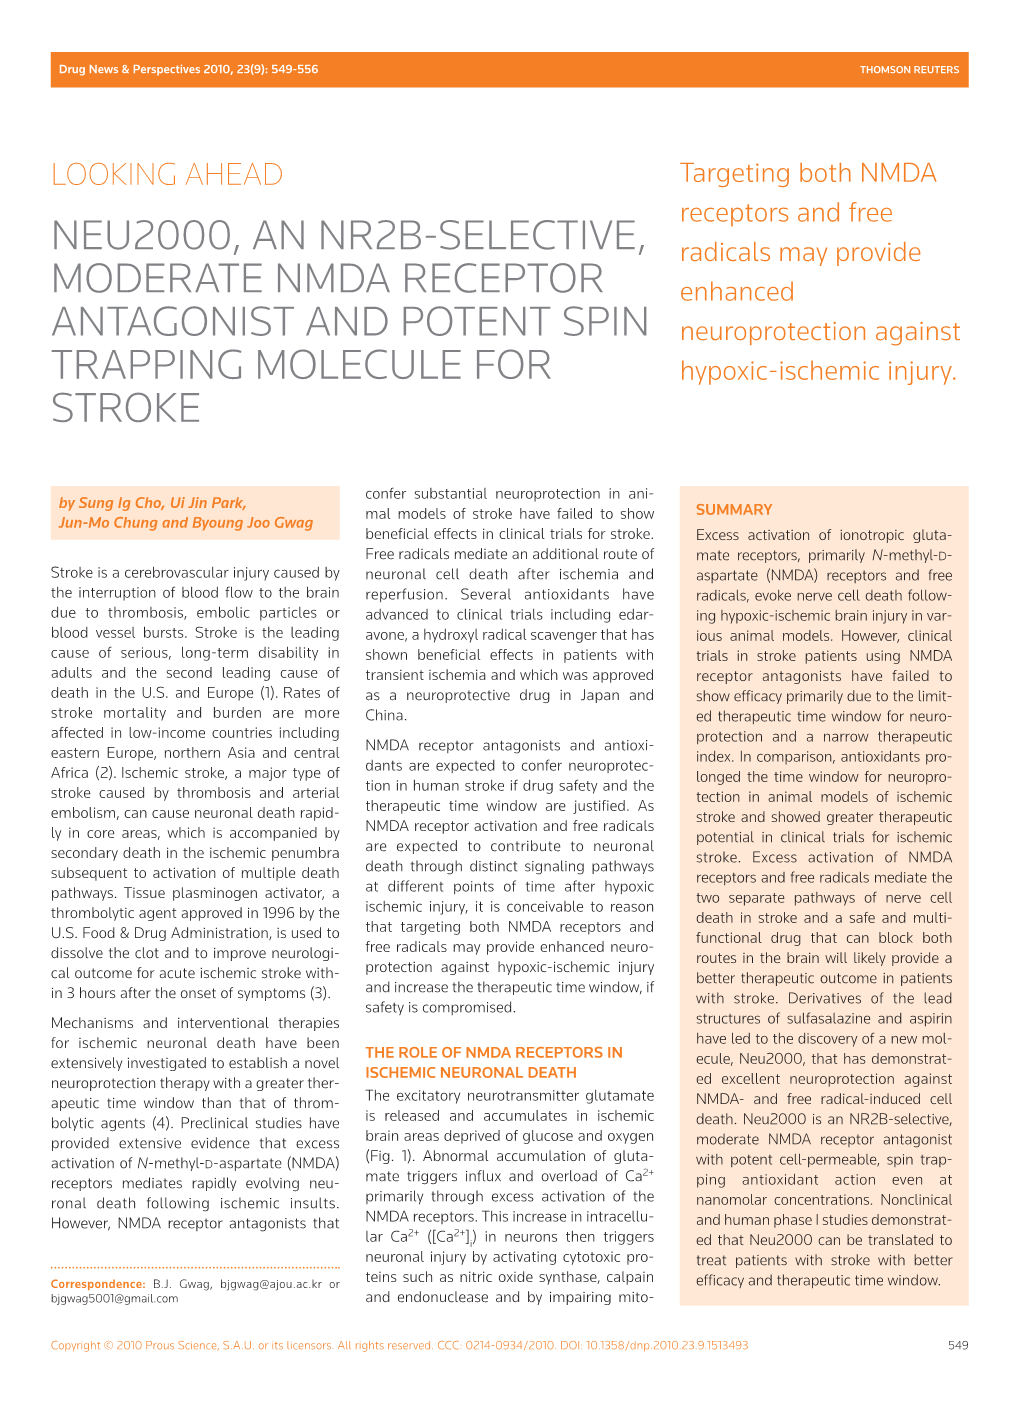 Neu2000, an NR2B-Selective, Moderate NMDA Receptor